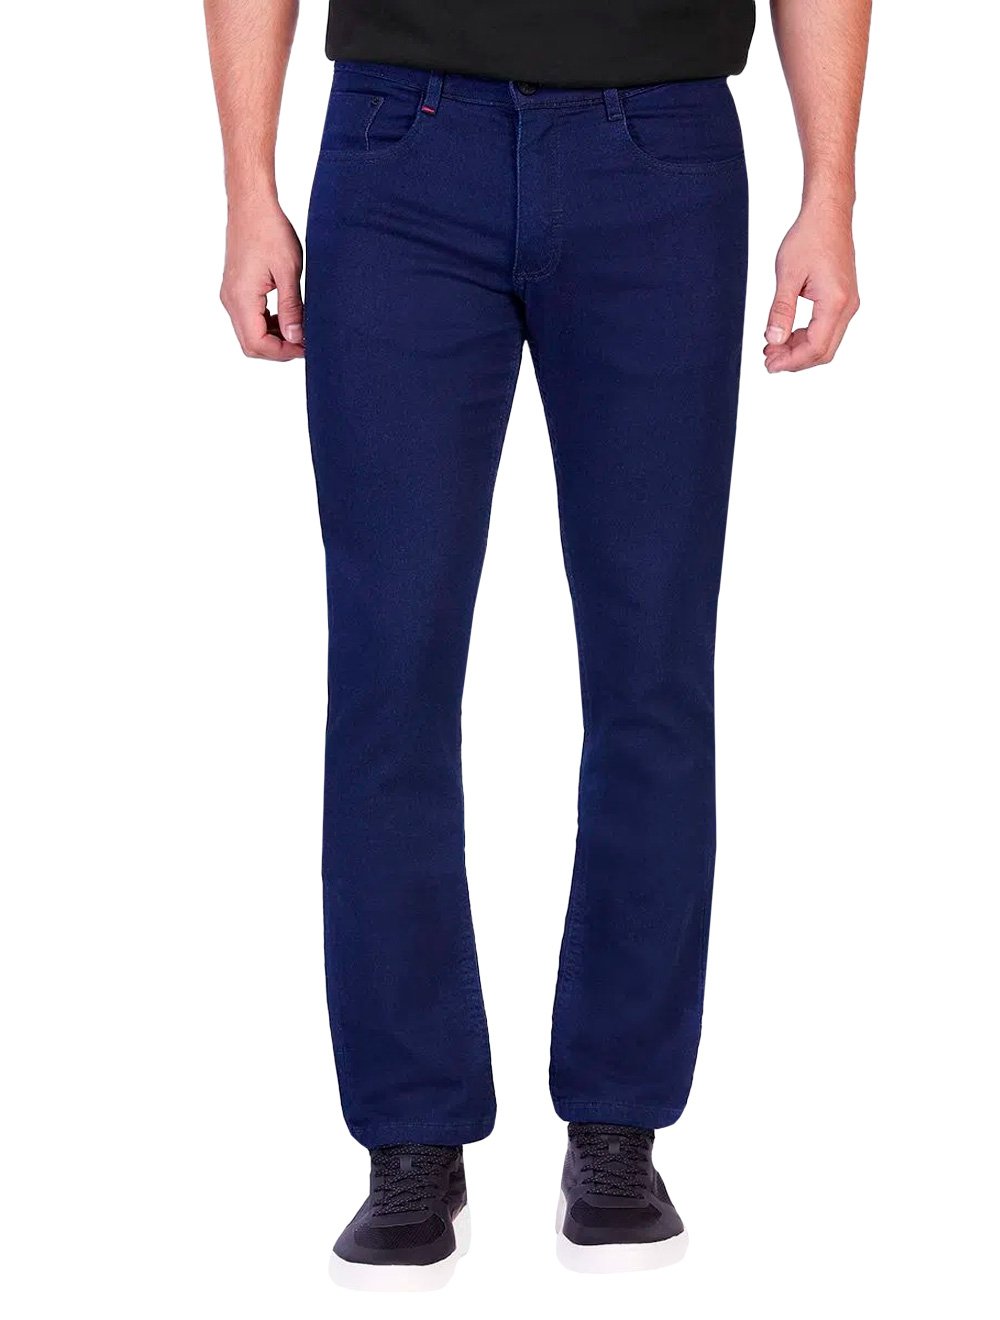 Calça Aramis Jeans Masculina Skinny Soft 5 Pockets Azul Escuro